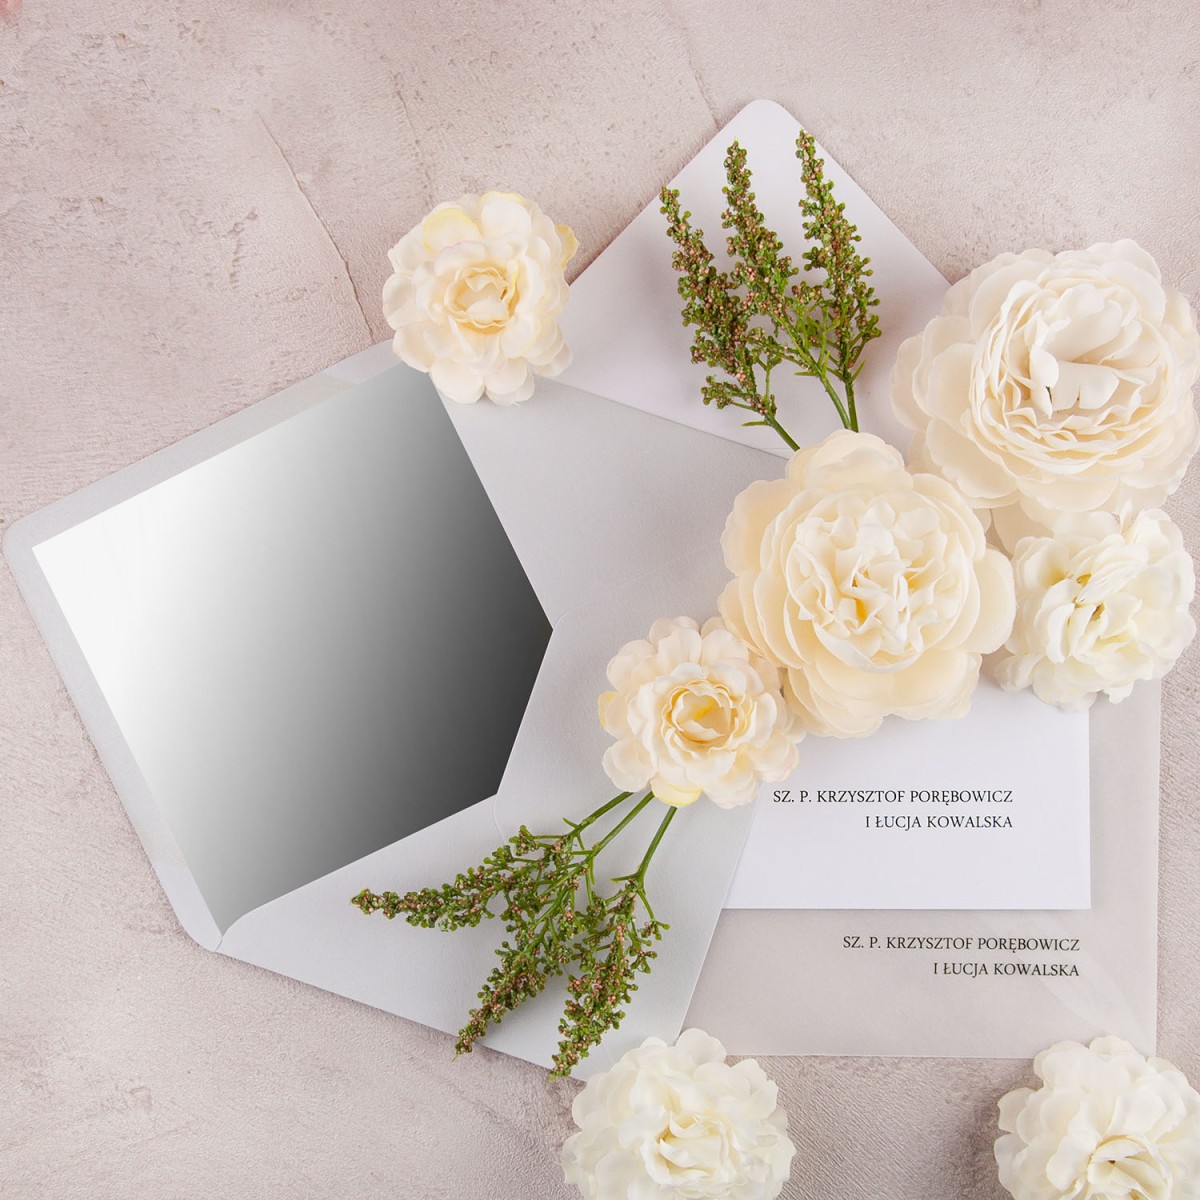 Eleganckie zaproszenia ślubne na papierze marmurkowym ze srebrnym wykończeniem - Magnificent Silver